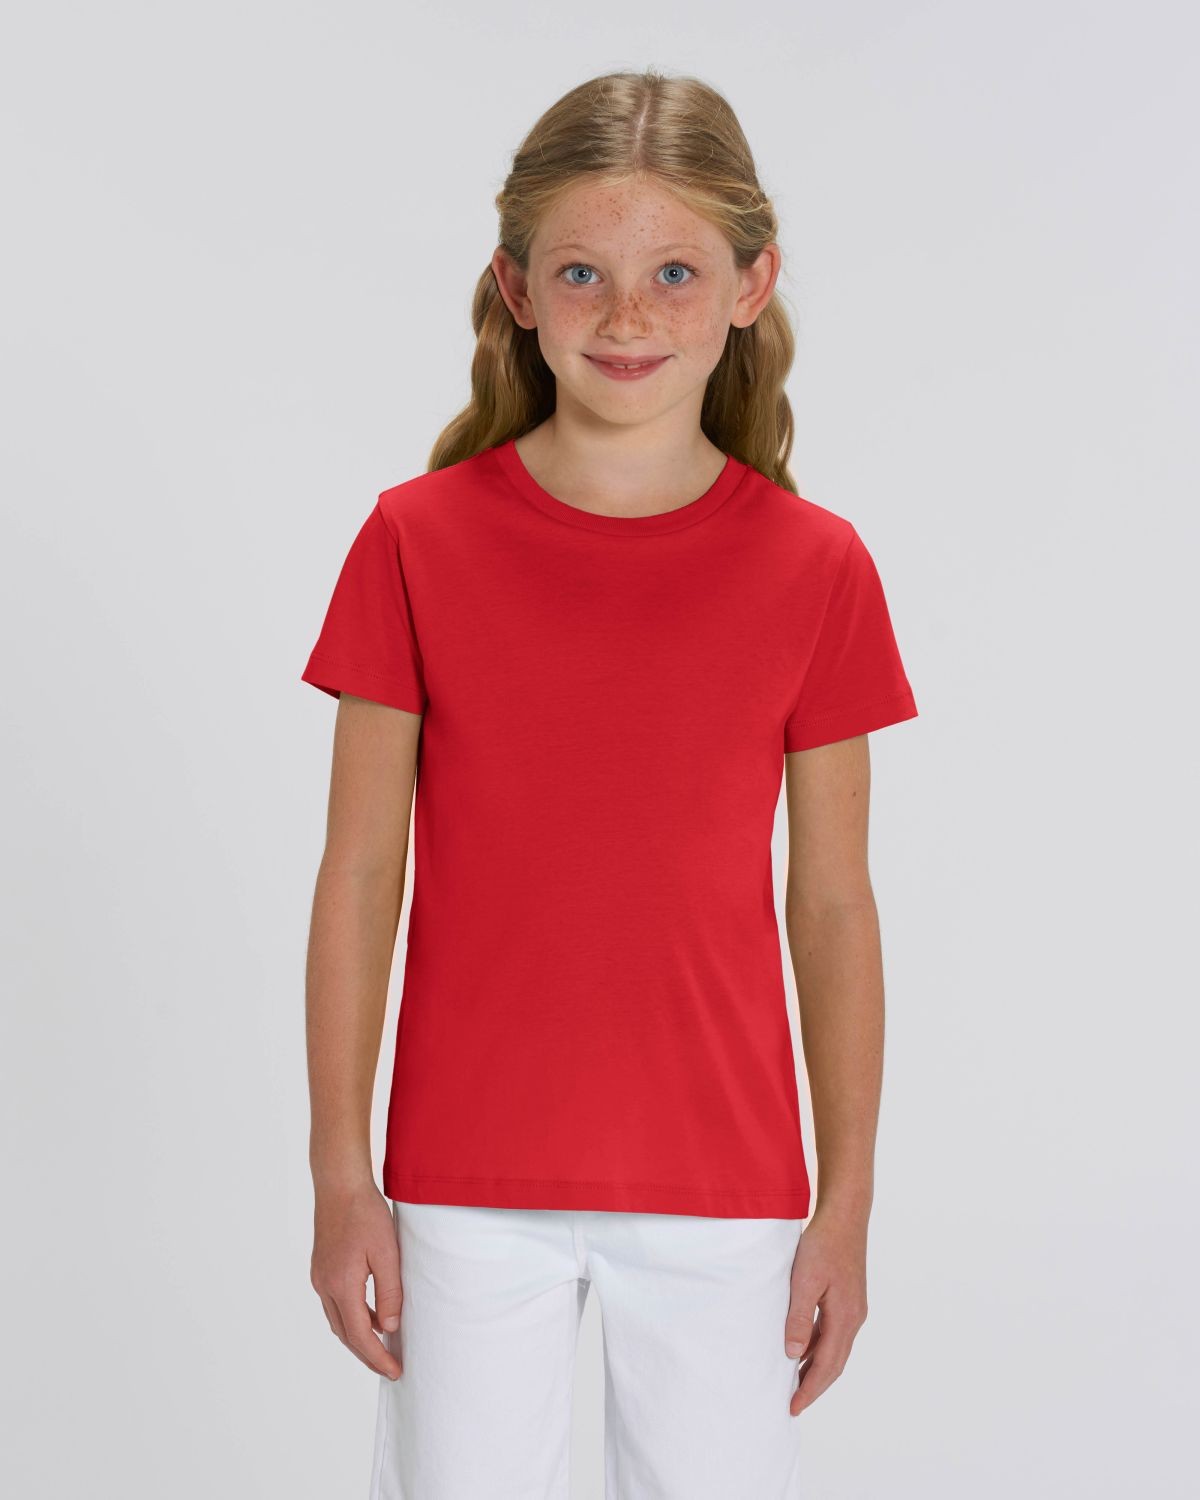 Camiseta niña Roja para personalización